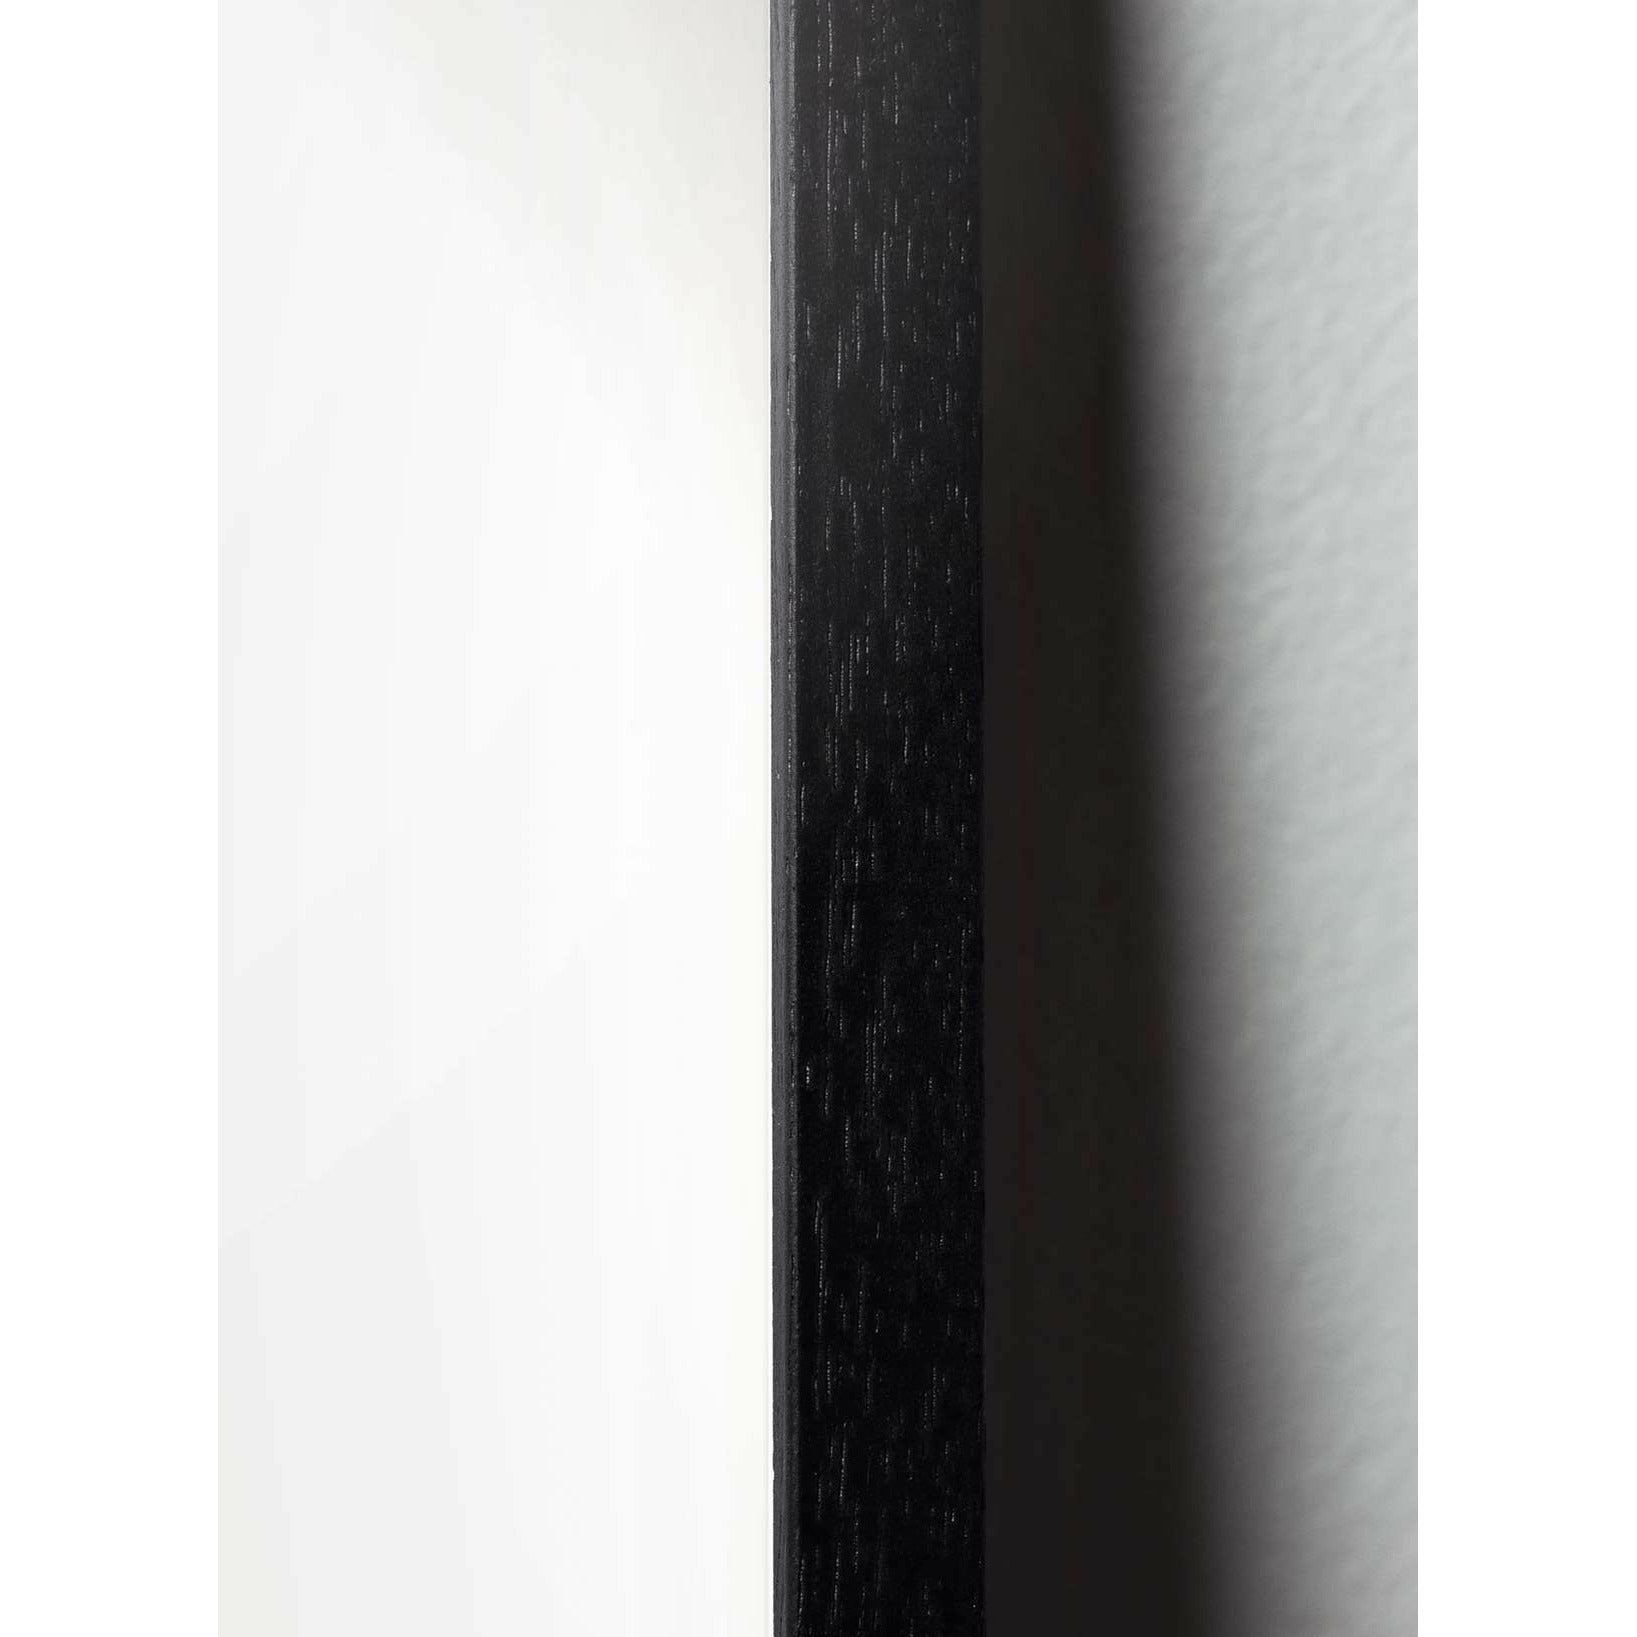 Plakát ikony mozkového designu, rám vyrobený z černého lakovaného dřeva 30x40 cm, šedá